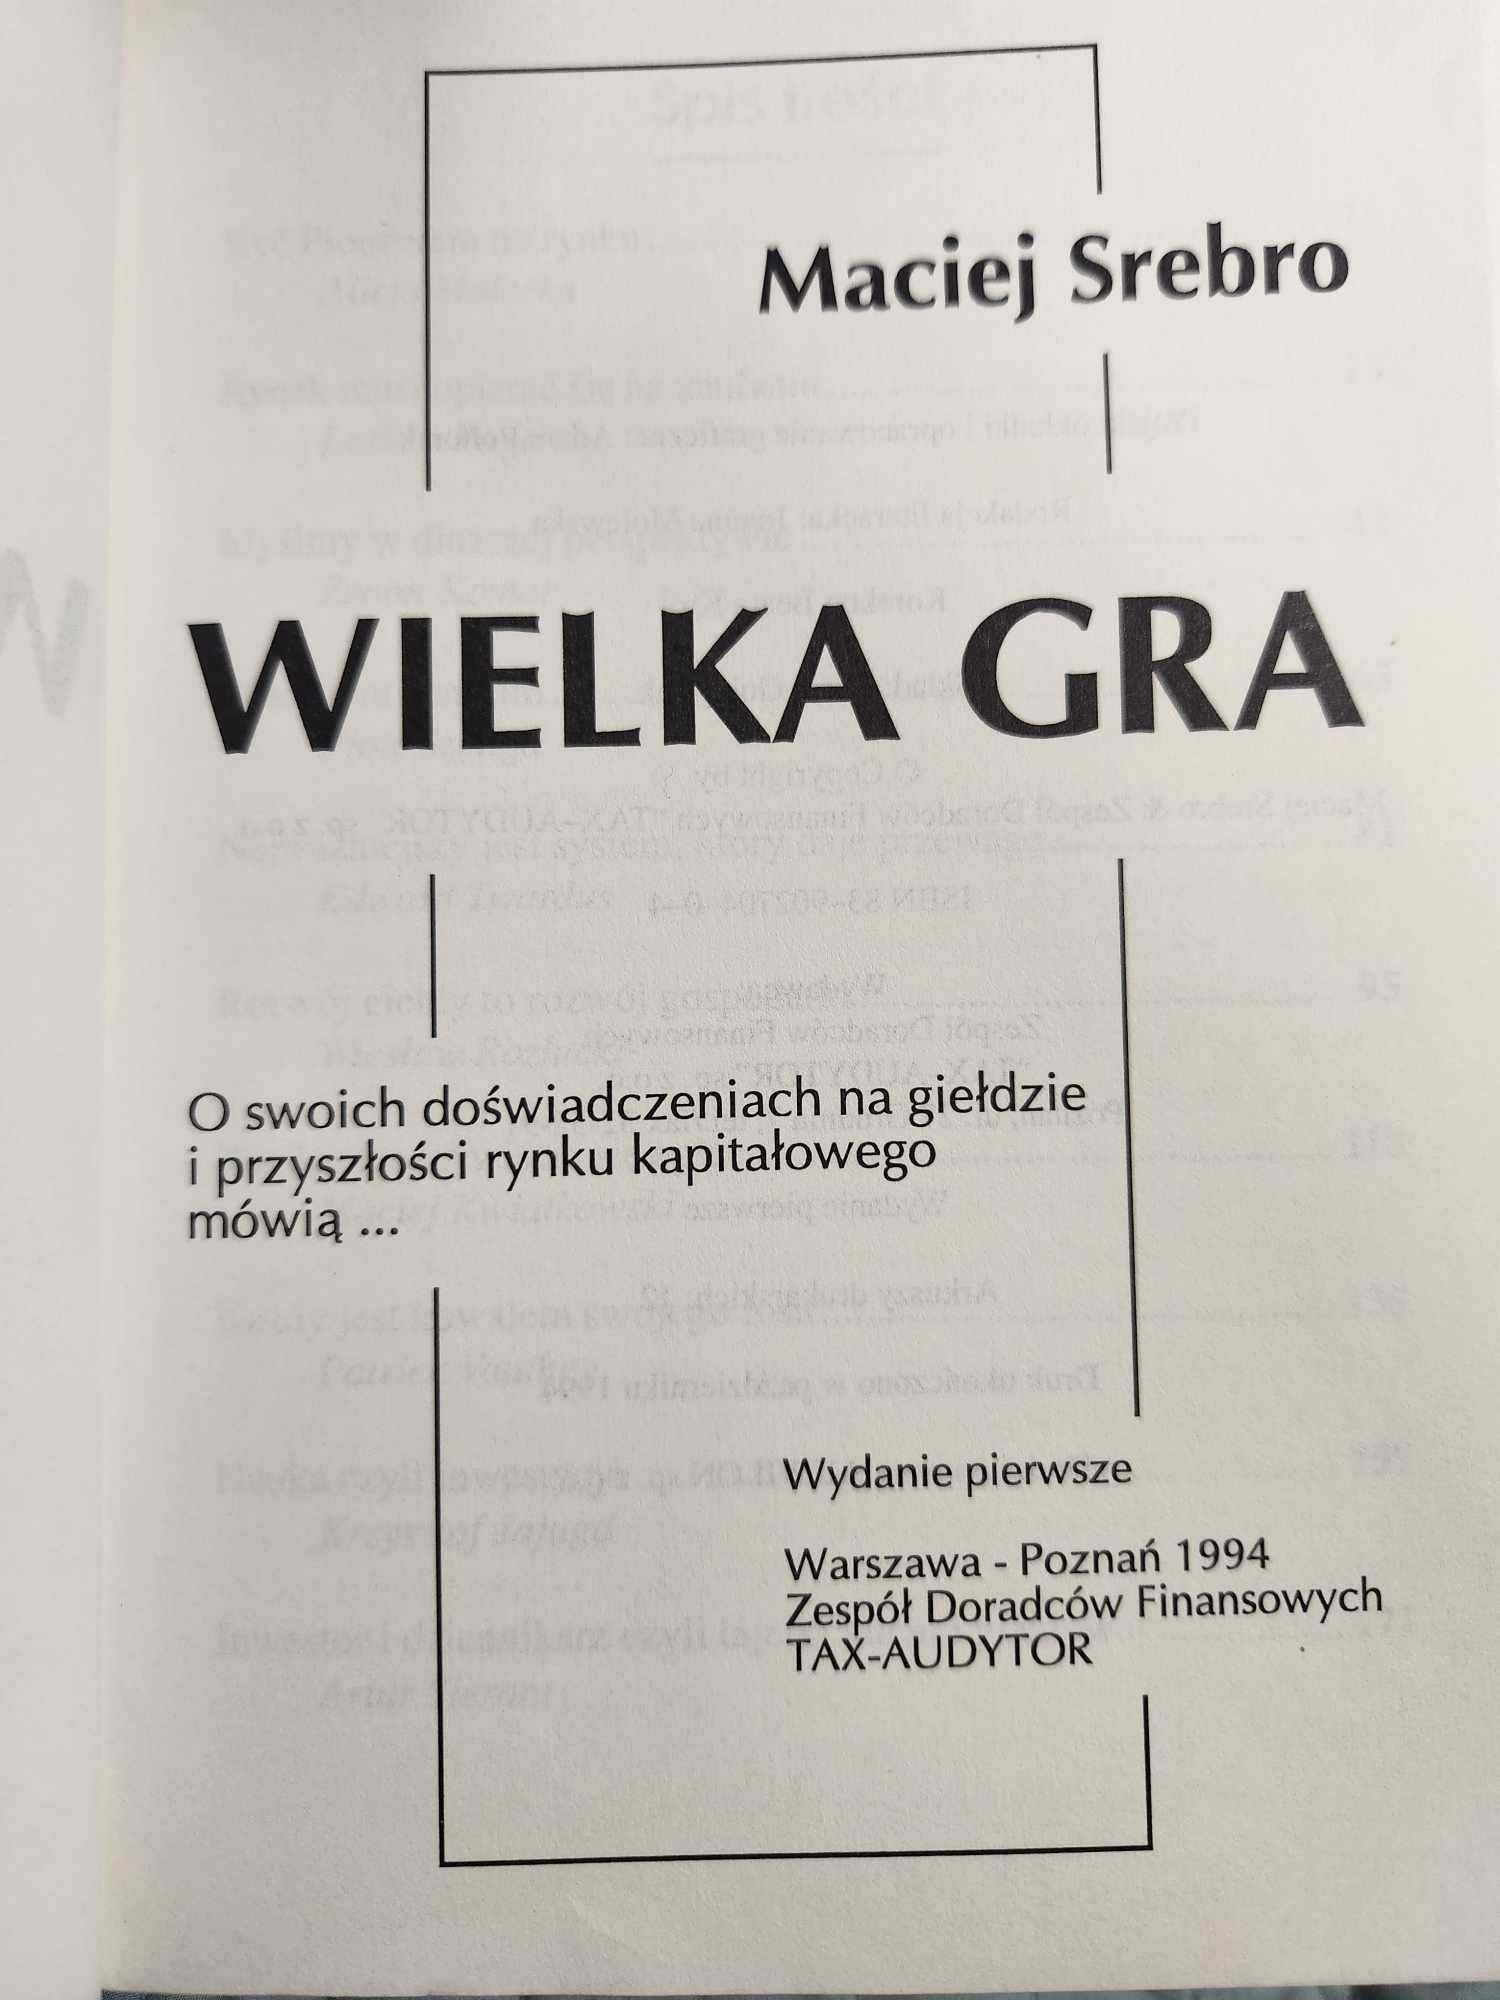 Wielka gra Maciej Srebro o swoich doświadczeniach na giełdzie... 1994